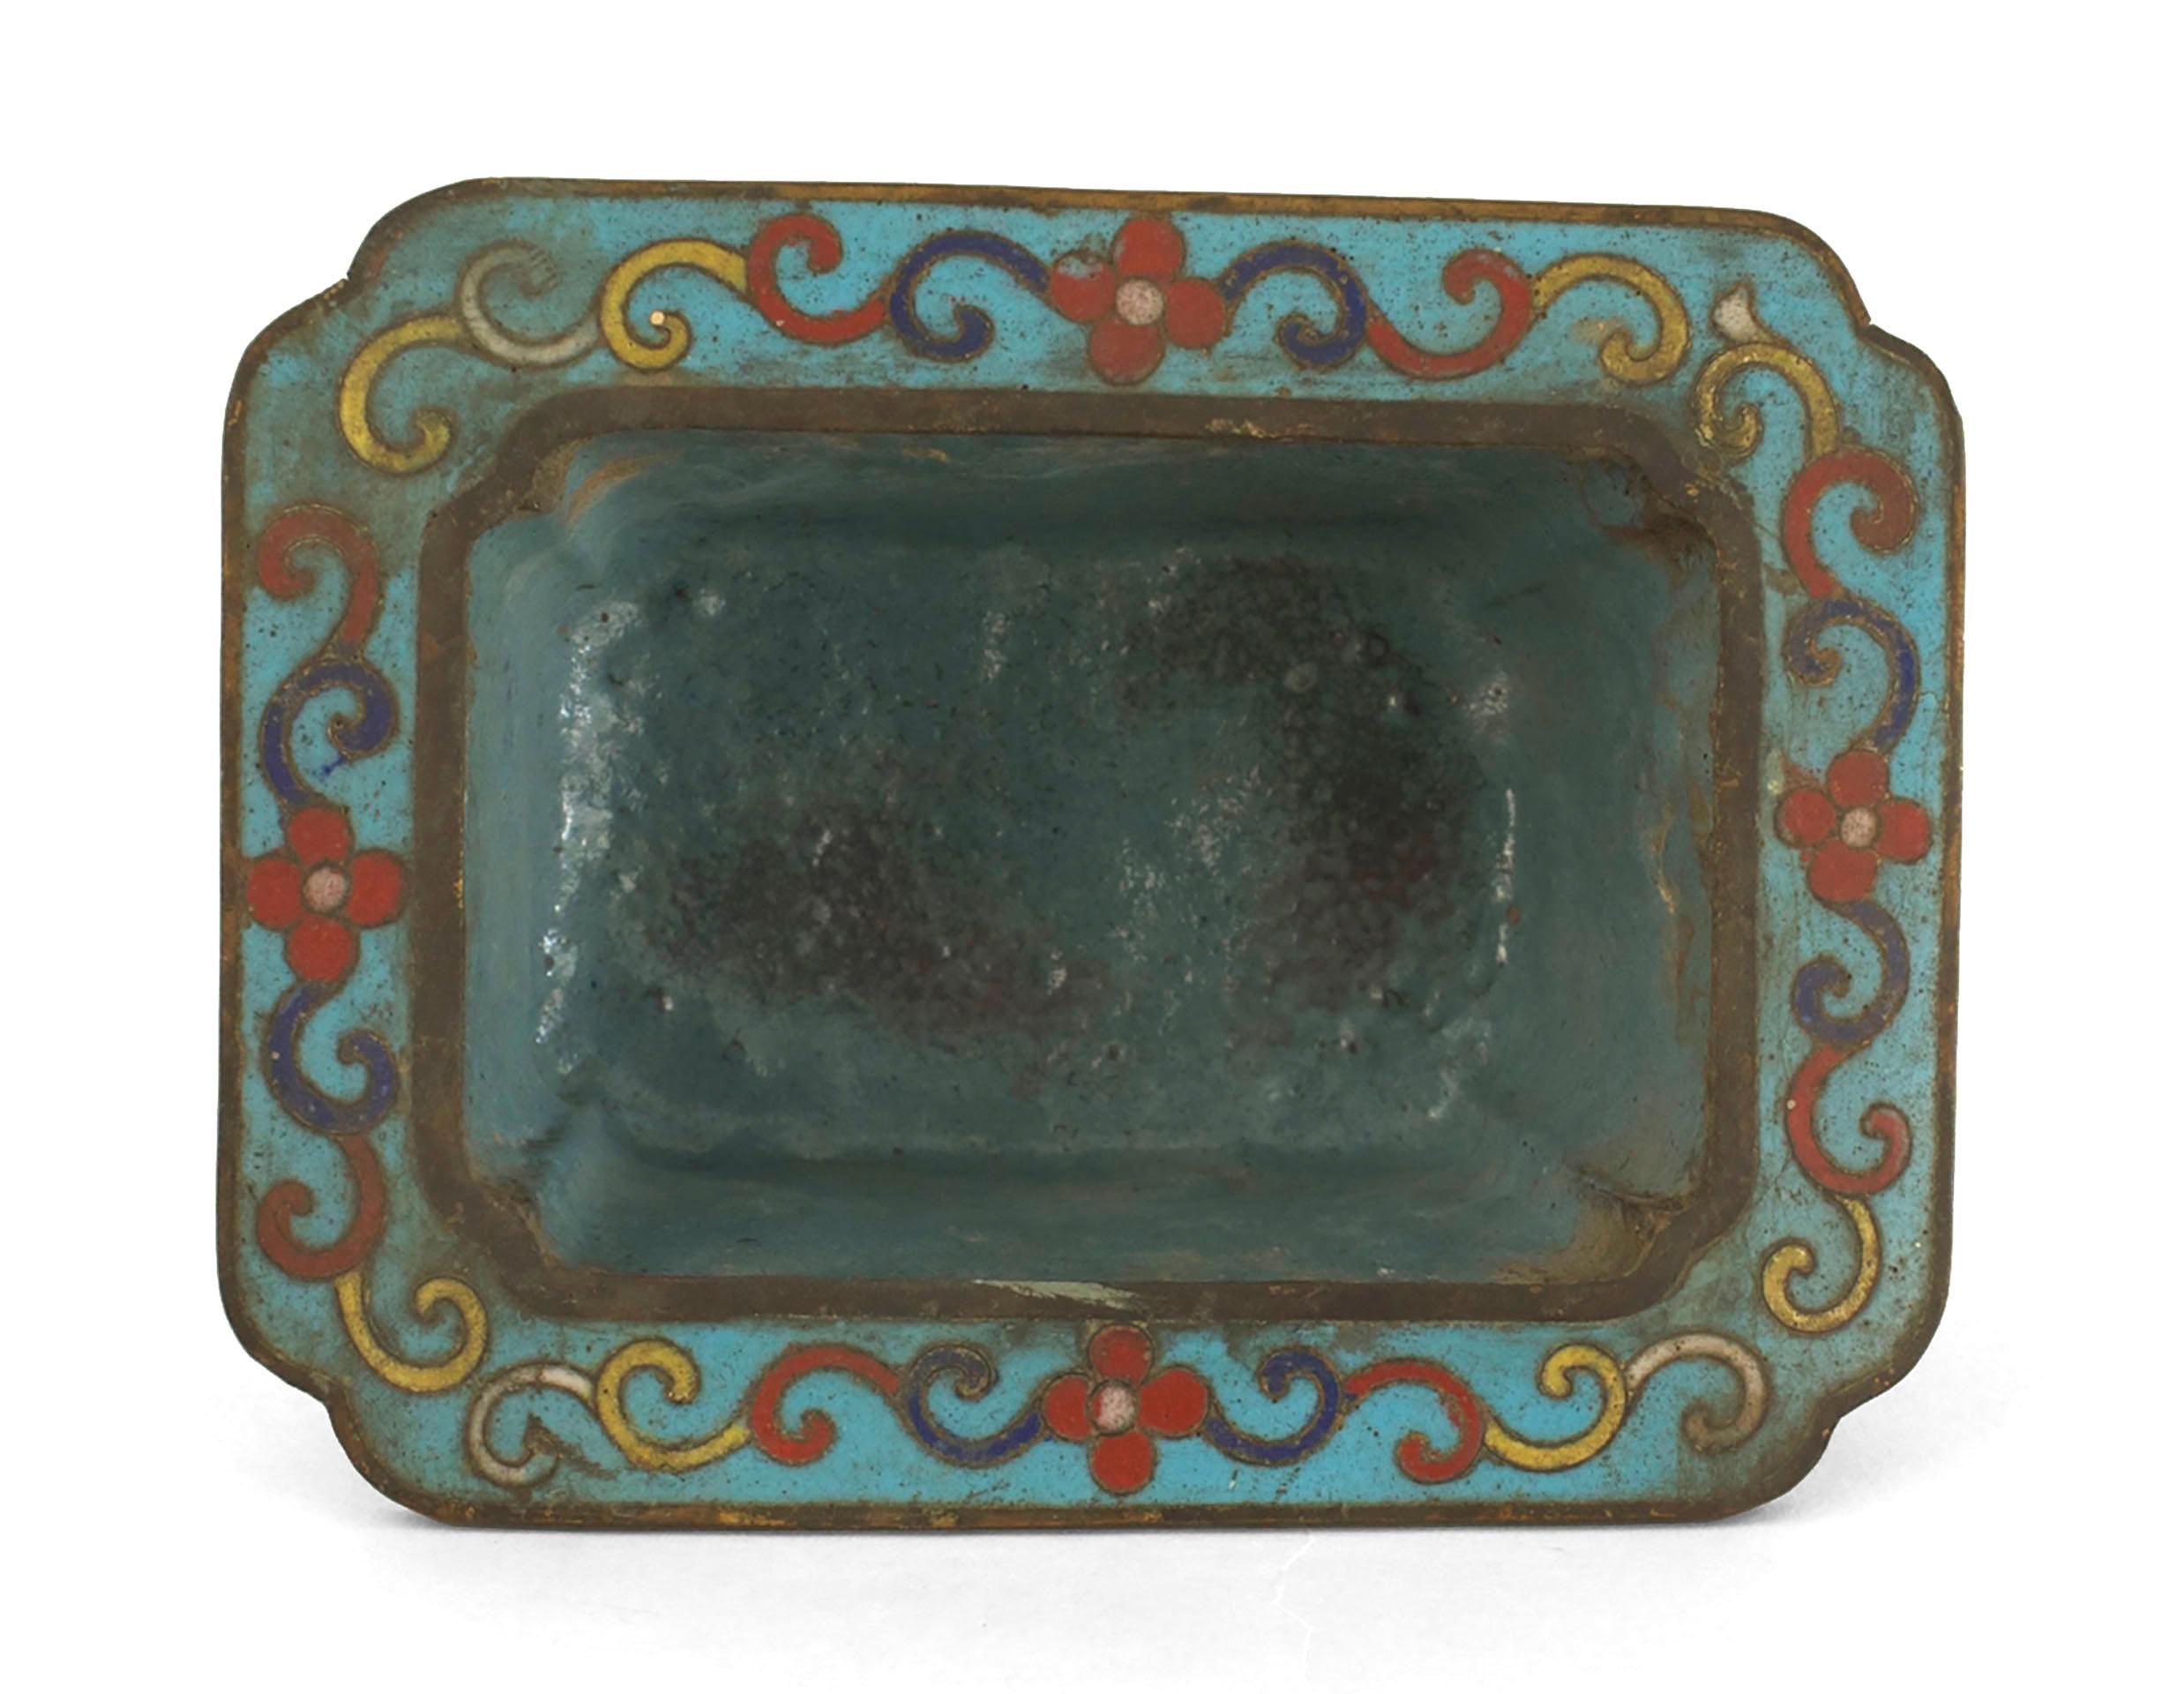 Paire de petits cache-pots rectangulaires asiatiques chinois (19/20e siècle) en cloisonné bleu et multicolore. (prix de la paire).
      